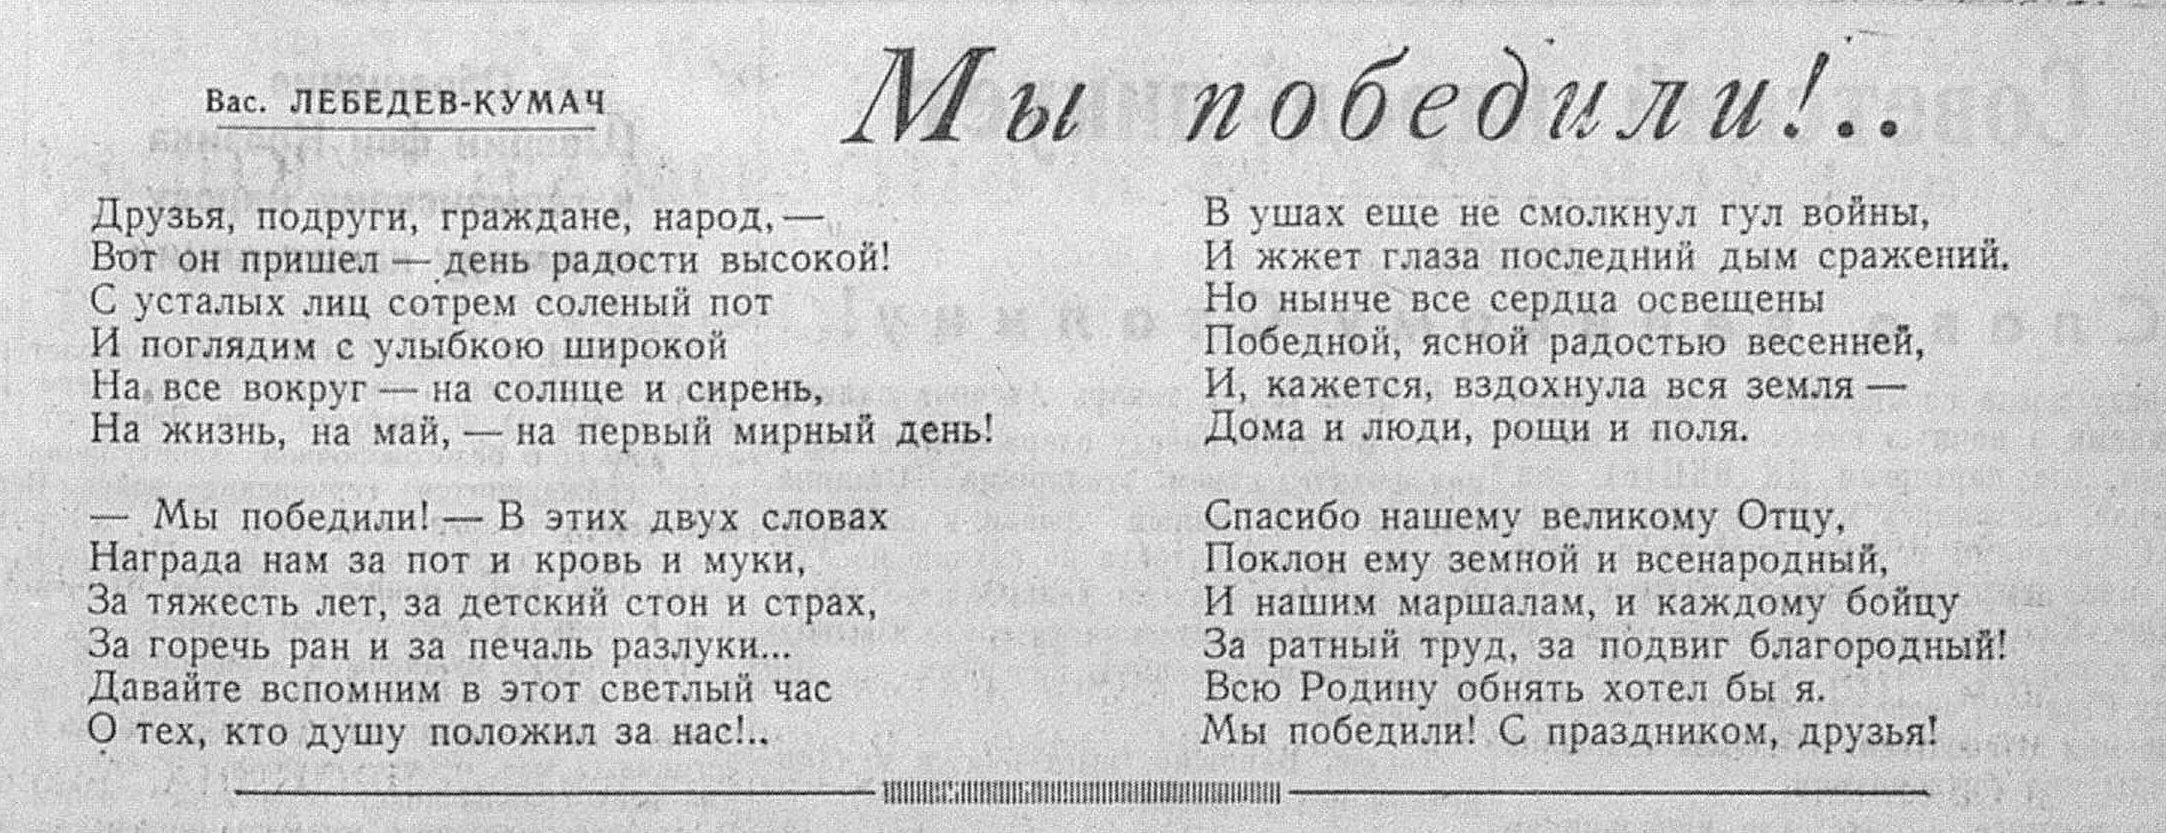 Школьная газета. День Победы